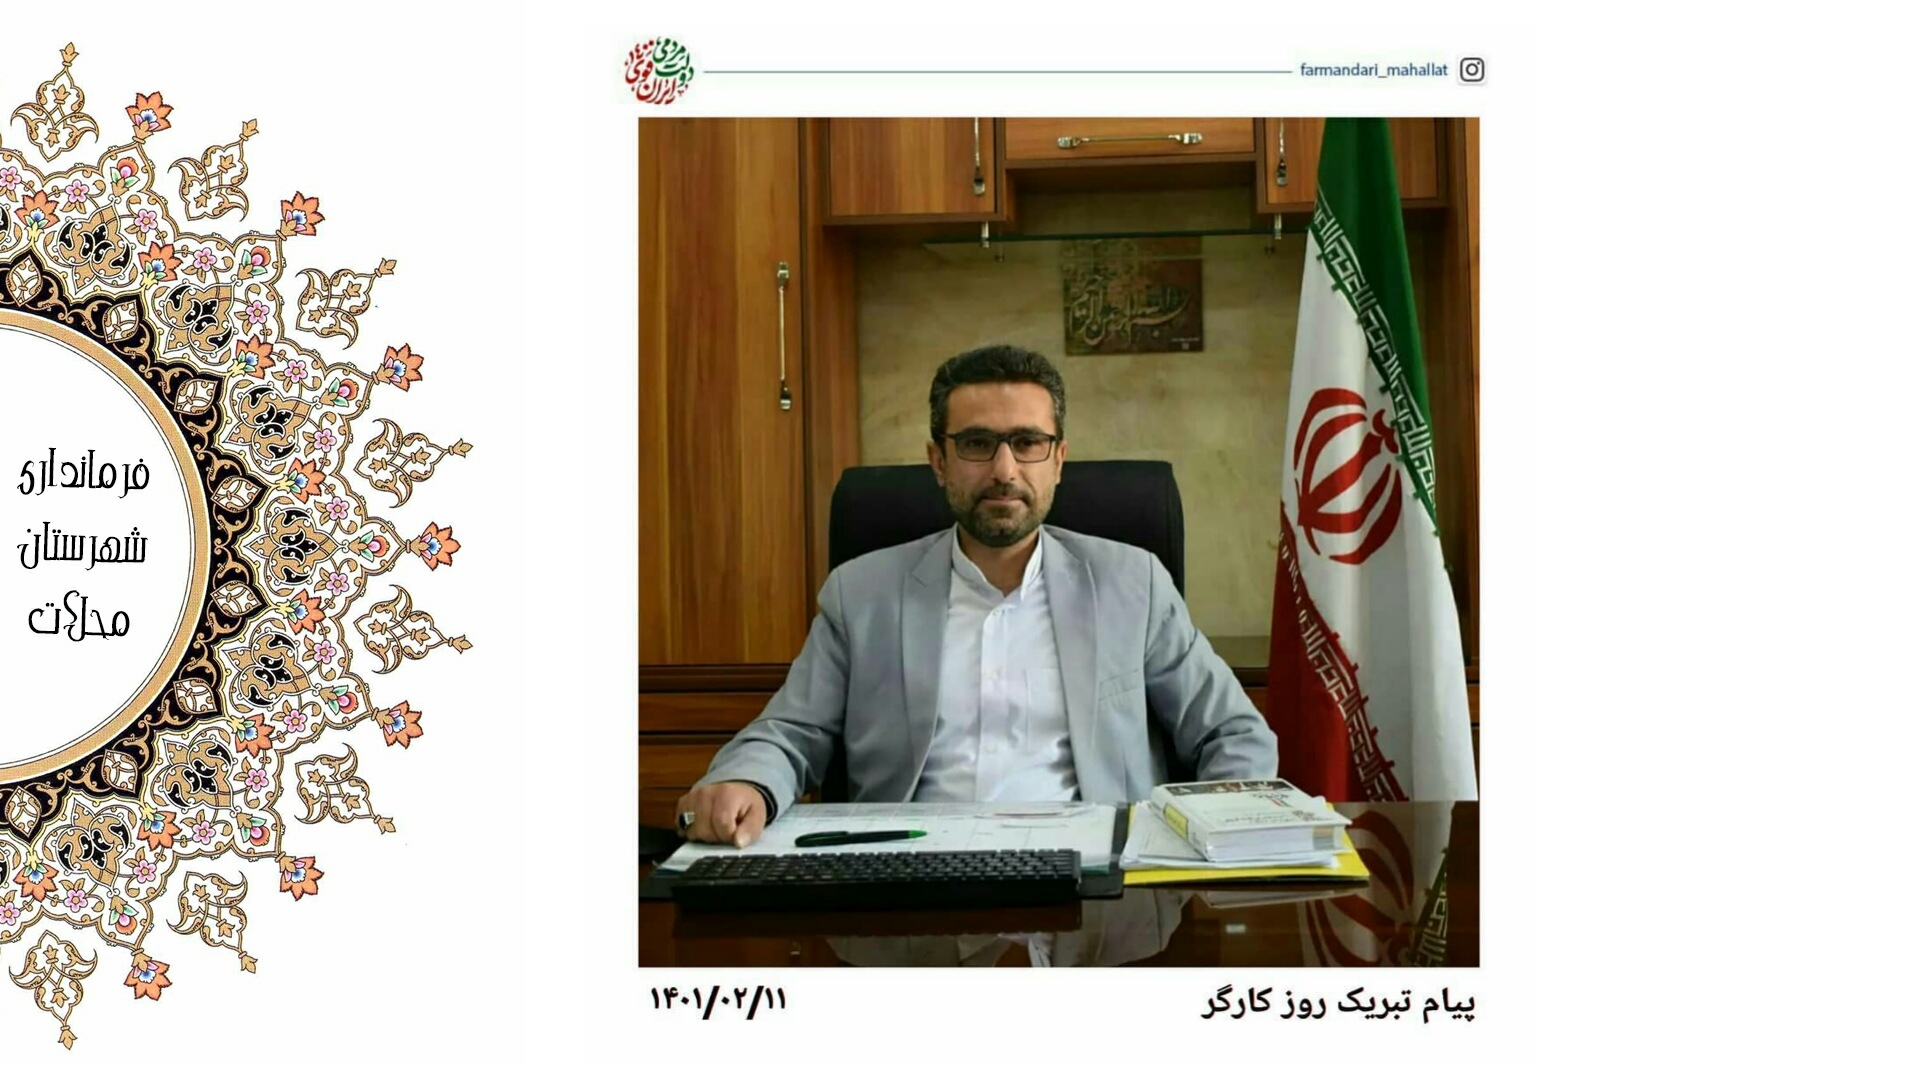 جهادگران بزرگ ایران اسلامی کارگران و تلاشگران عرصه تولید هستند